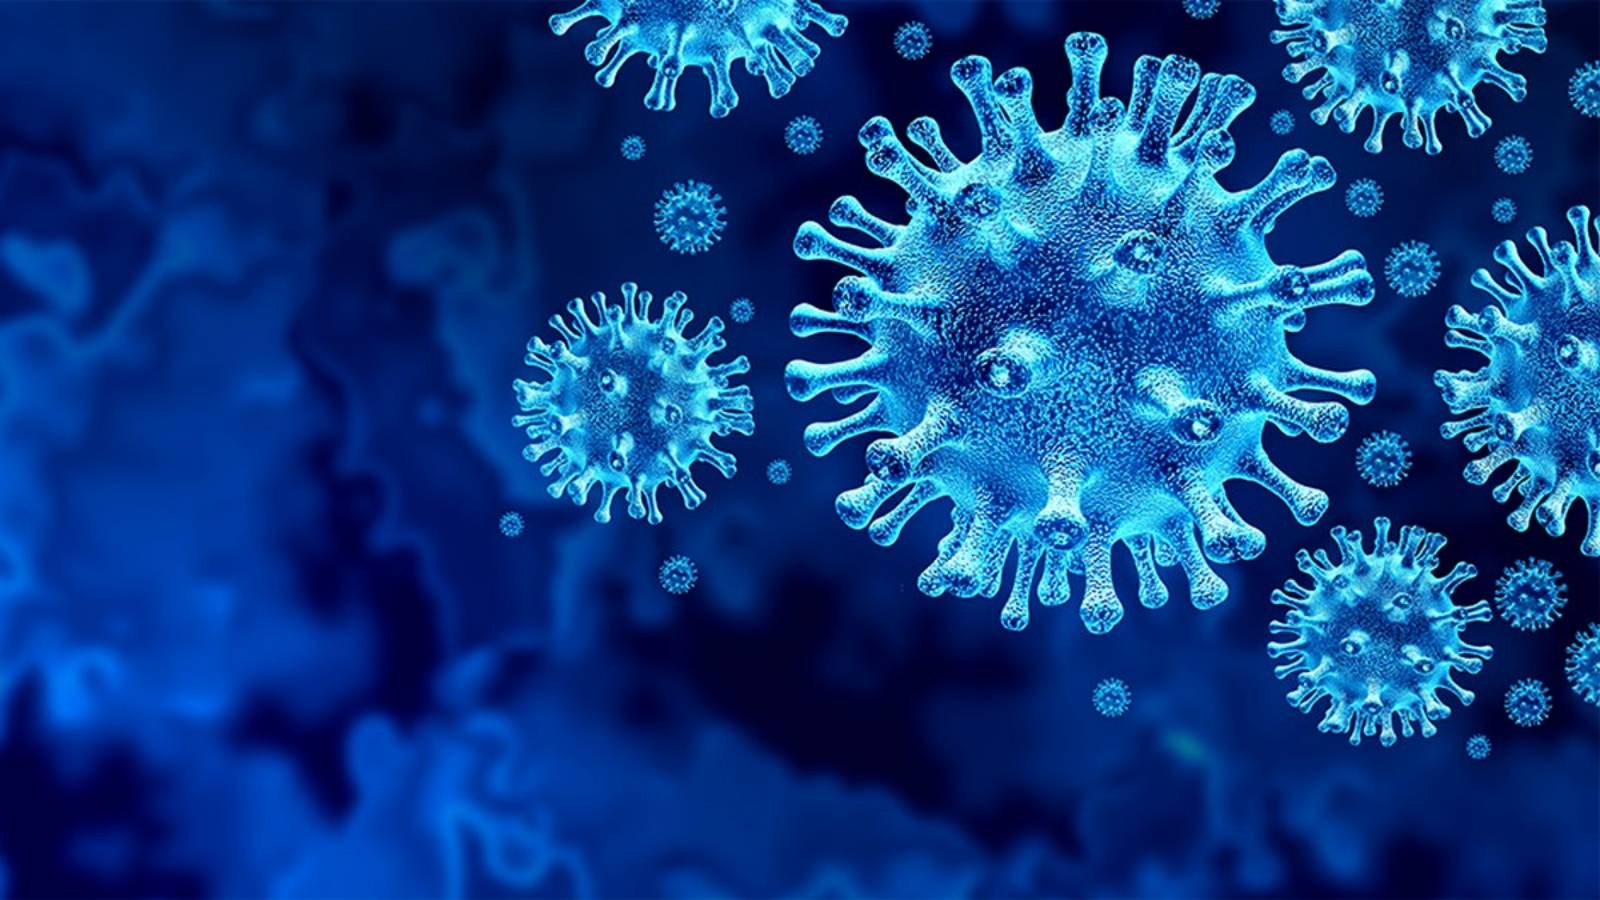 Läkande fall av Coronavirus Rumänien 24 maj